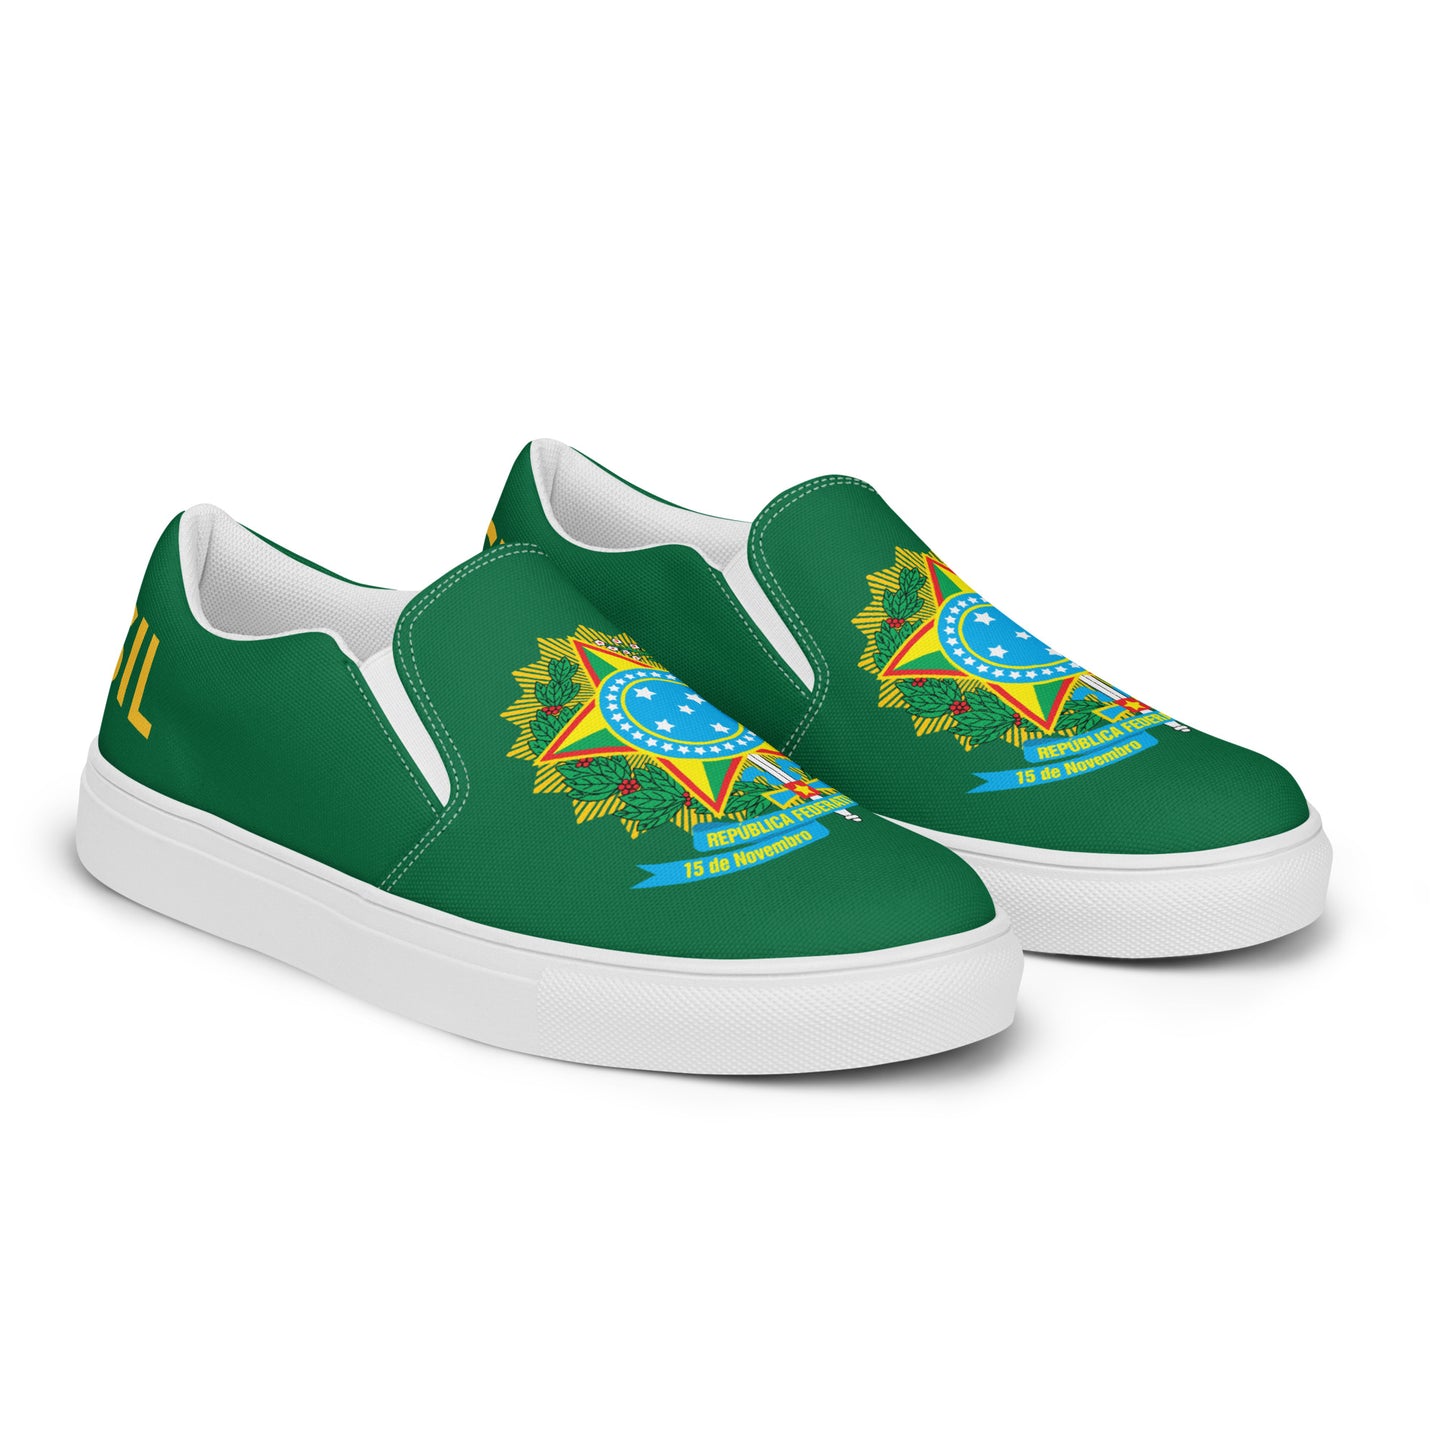 Brasil - Men - Green - Slip-on shoes